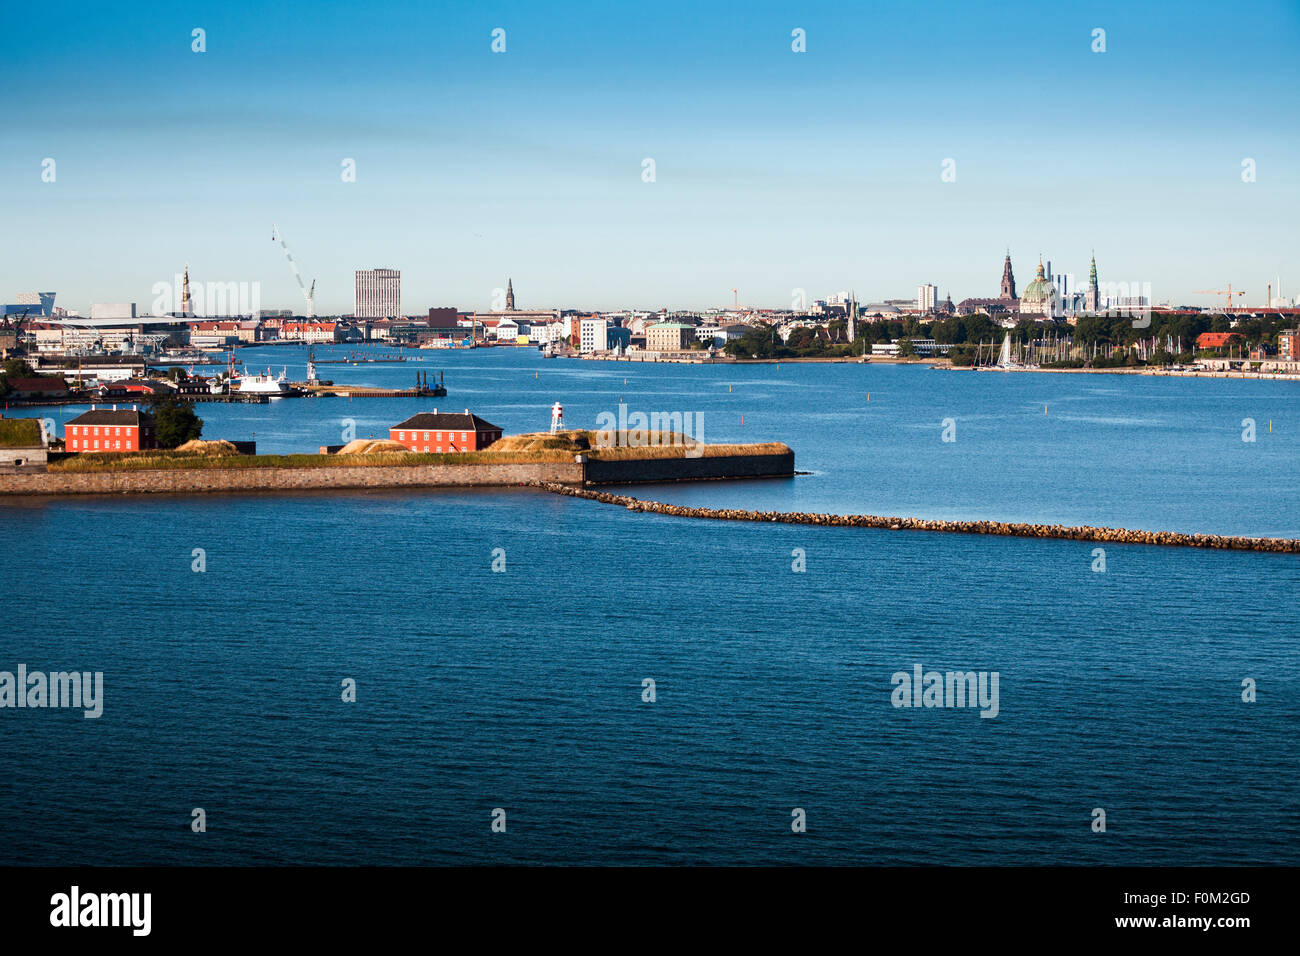 Skyline of Copenhagen, Denmark Stock Photo